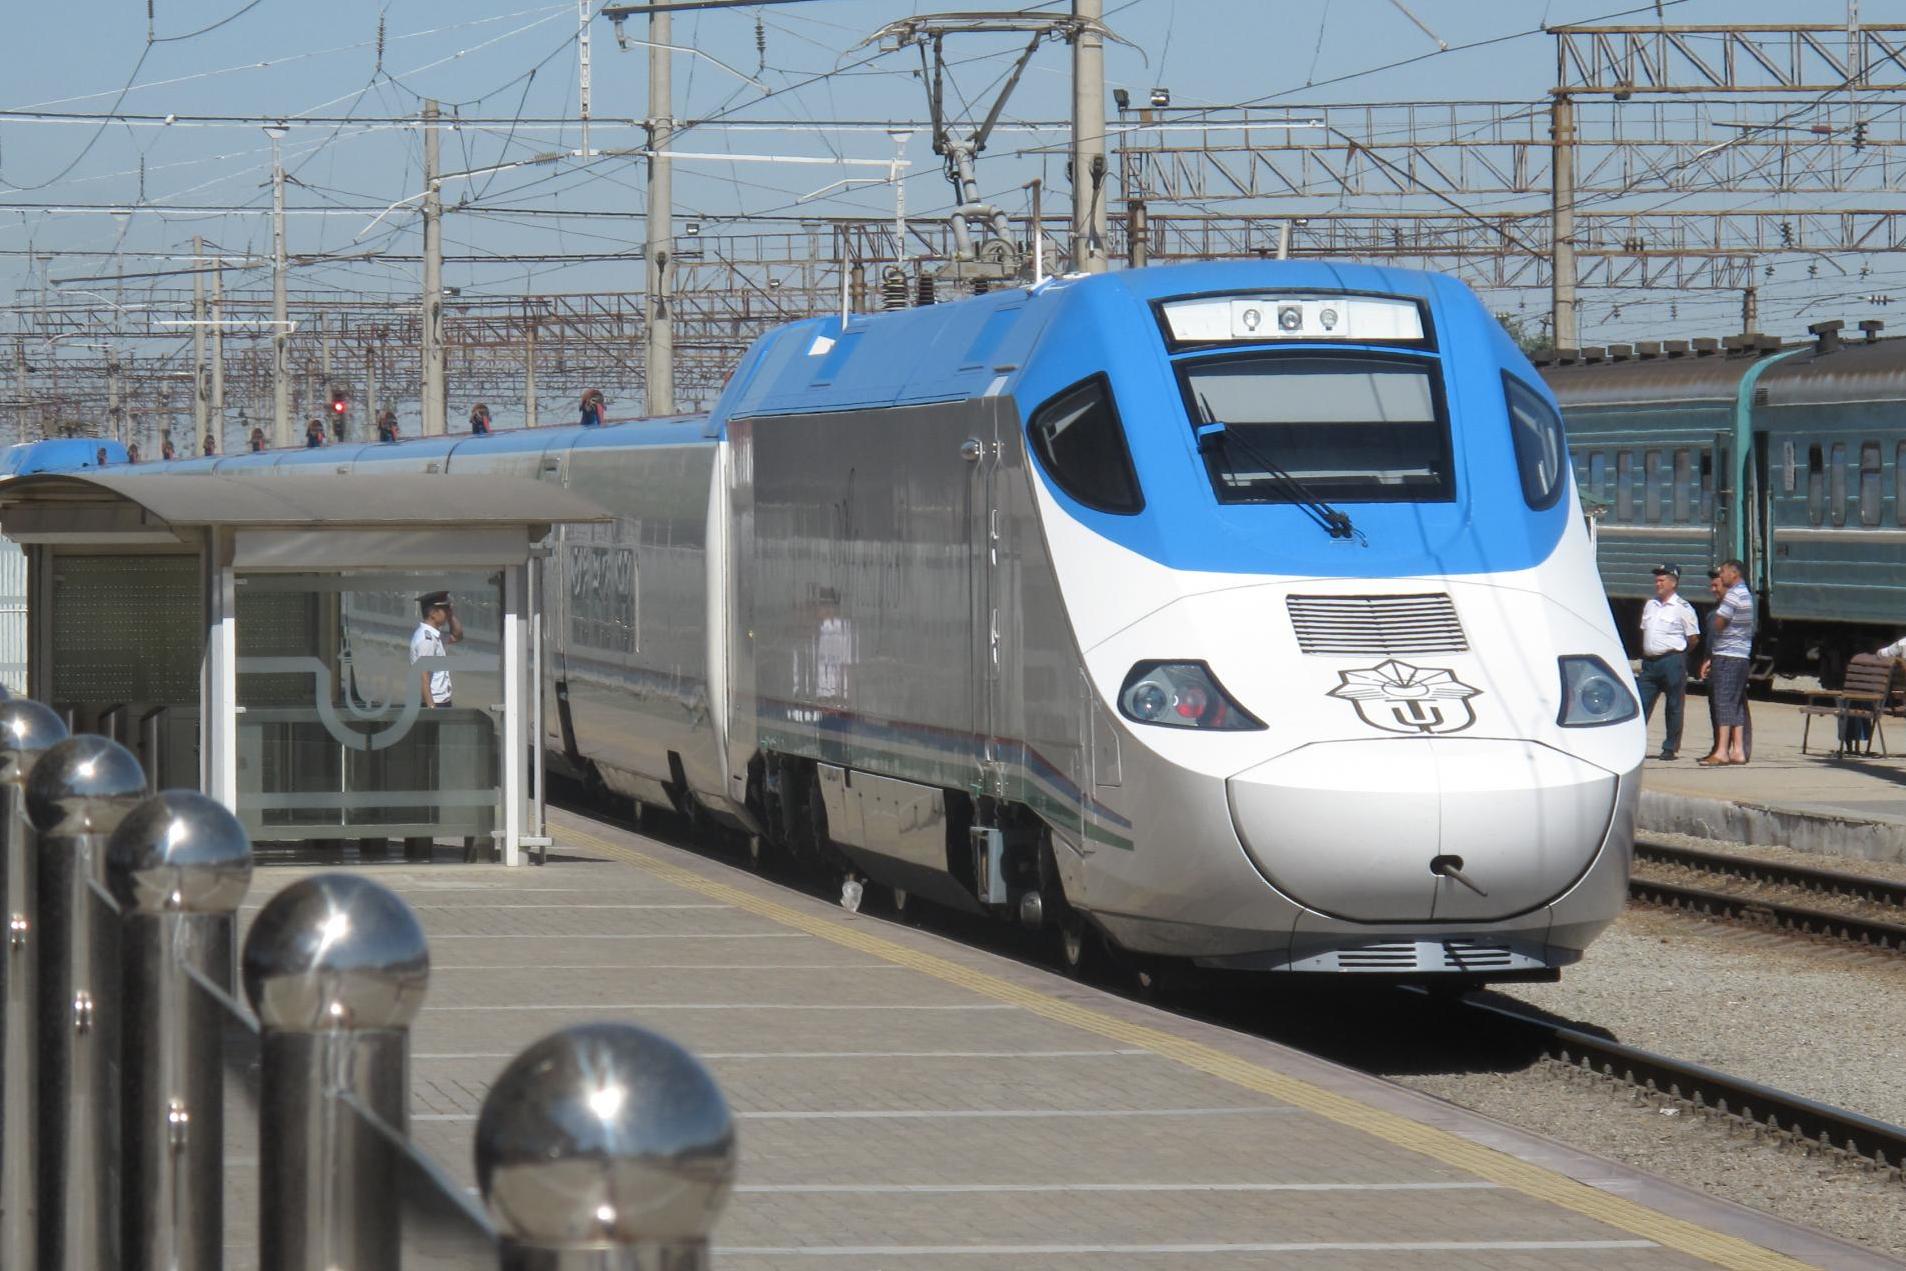 Silk railroad: the Afrosiyob train from Tashkent arriving in Samarkand